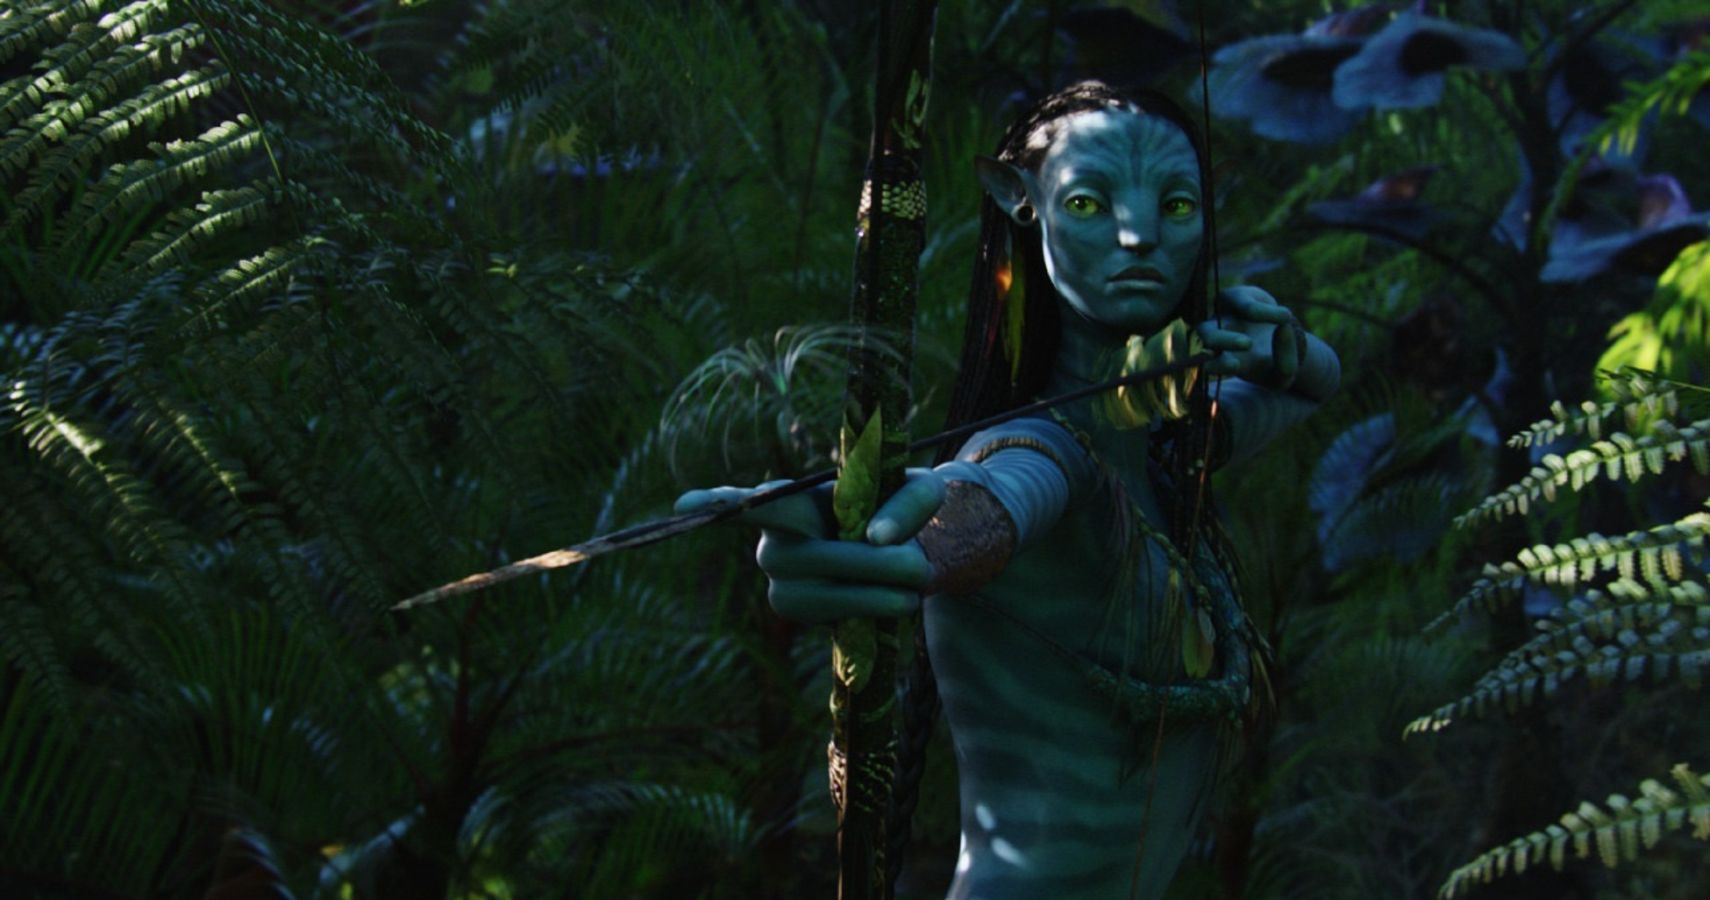 Neytiri with a bow ready in Avatar